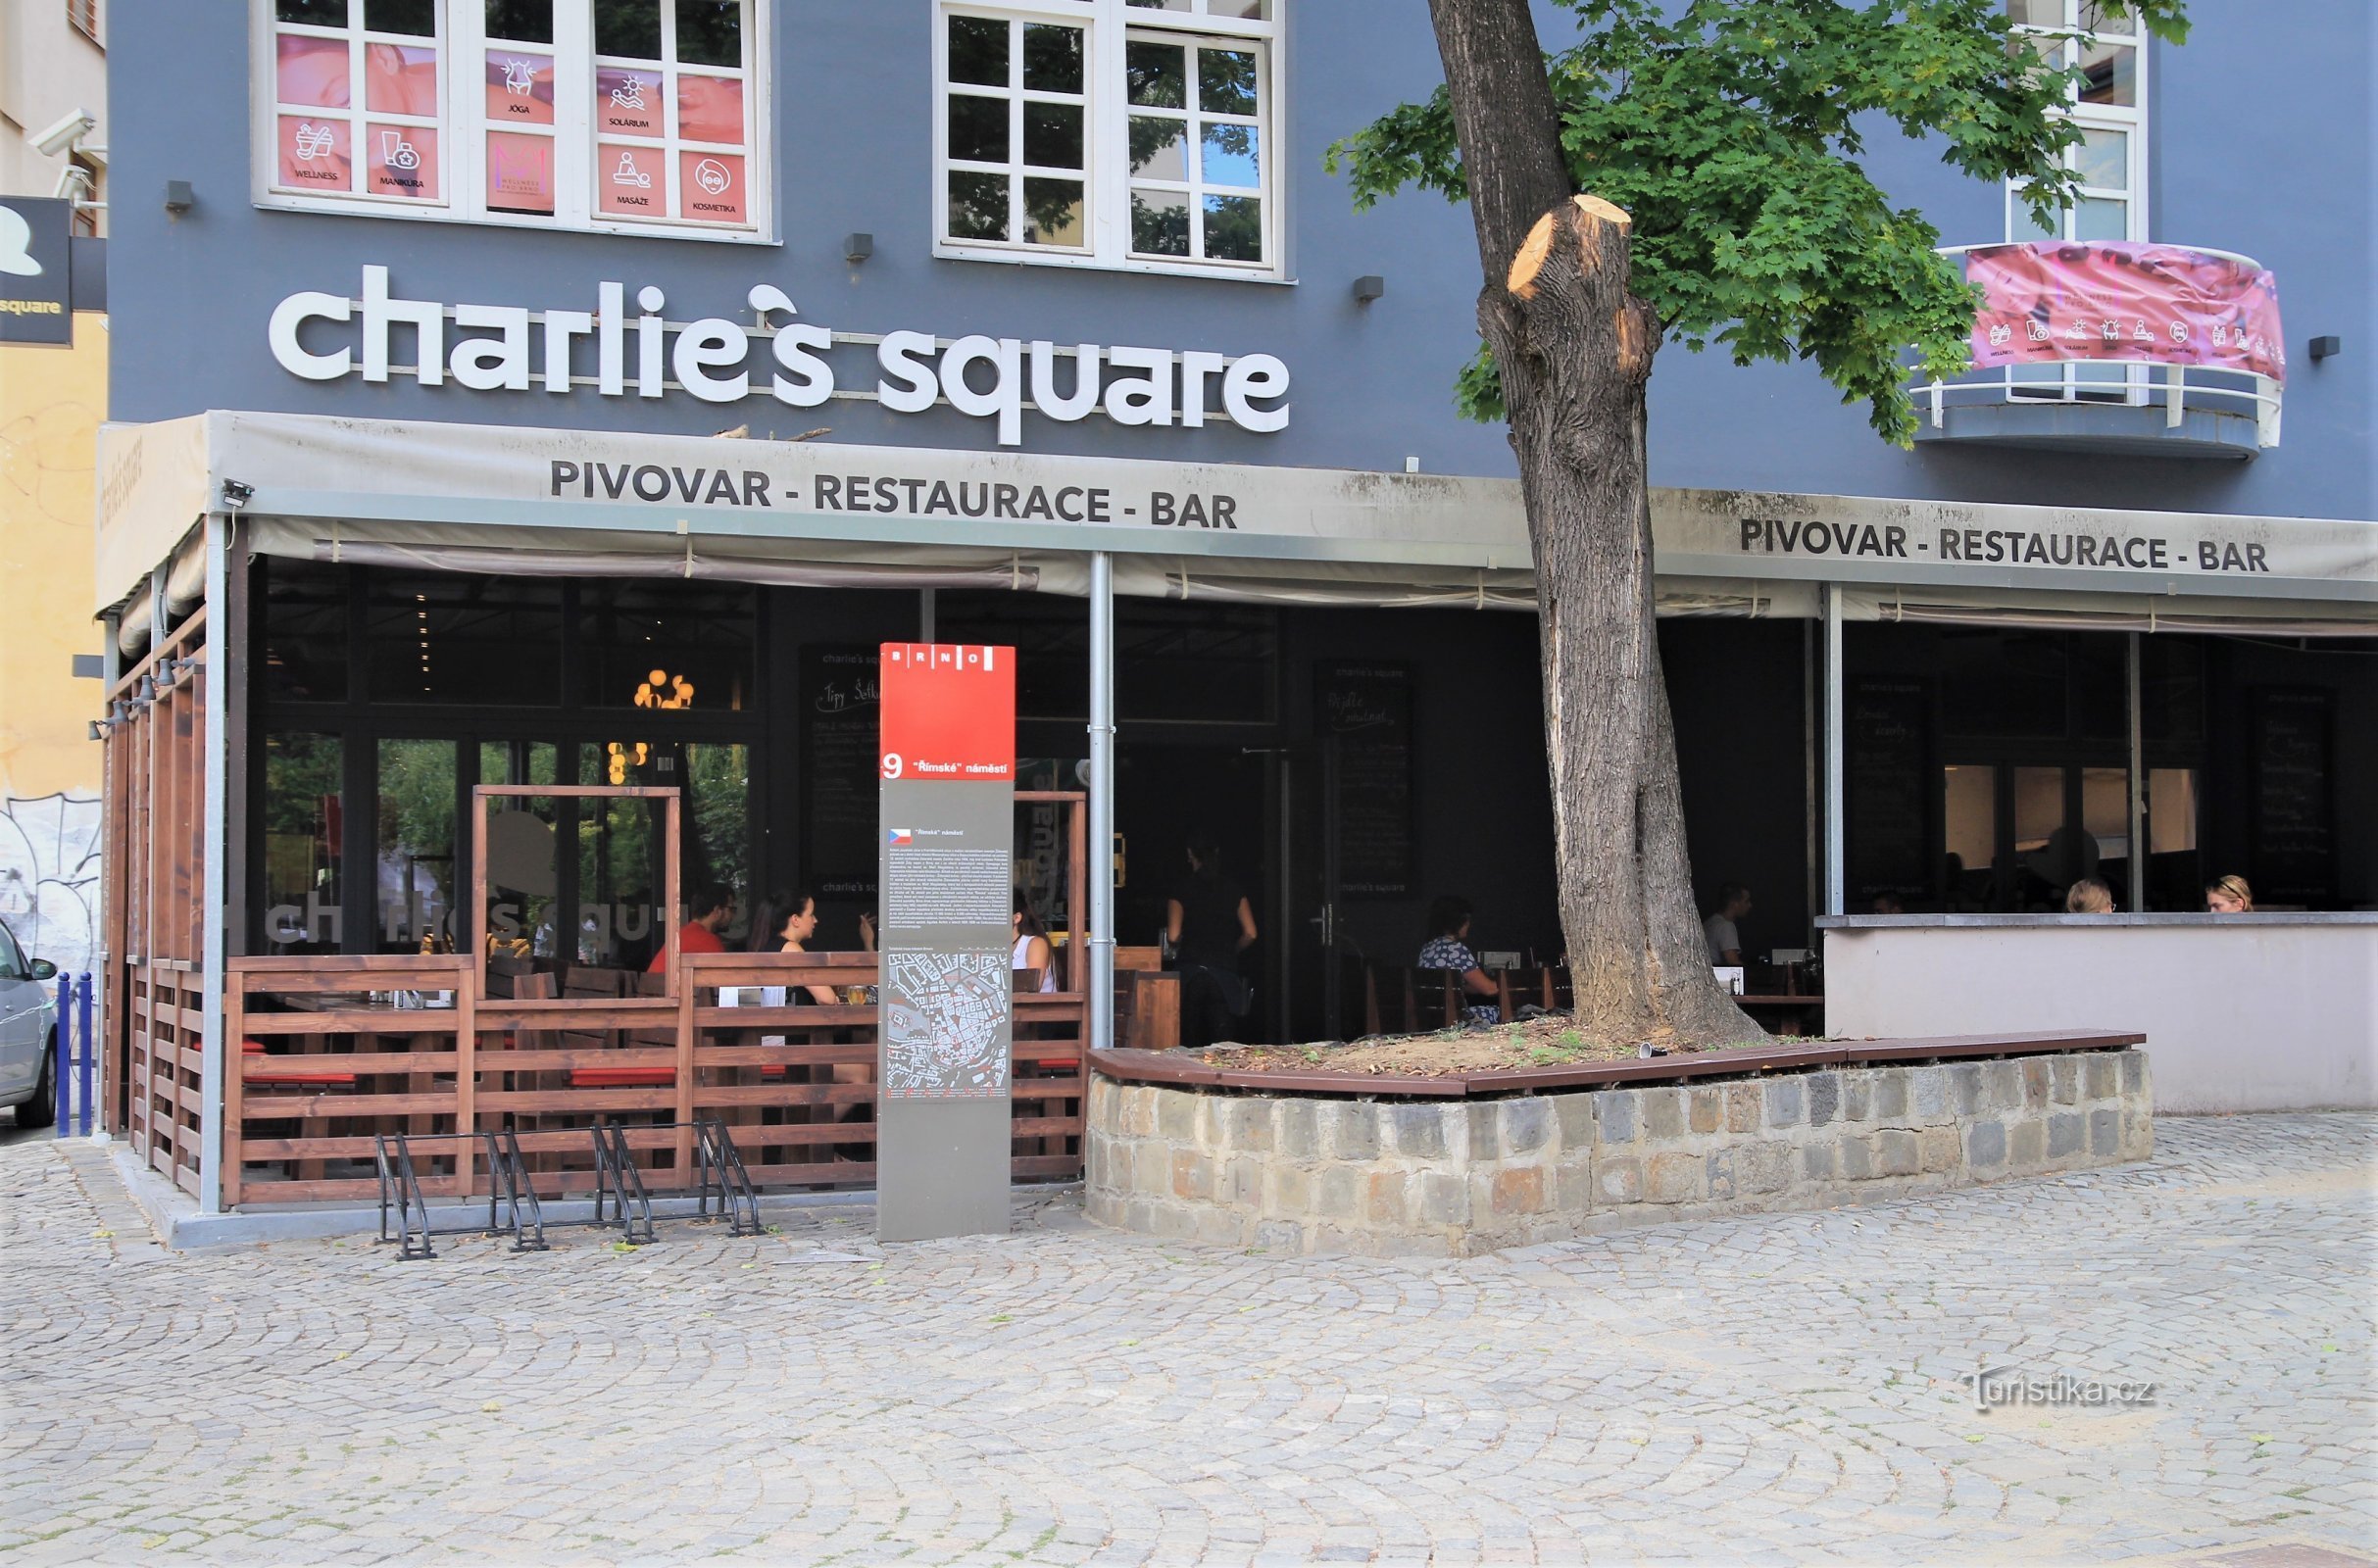 Charlie's Square mikrobryggeri med en stilfuld restaurant